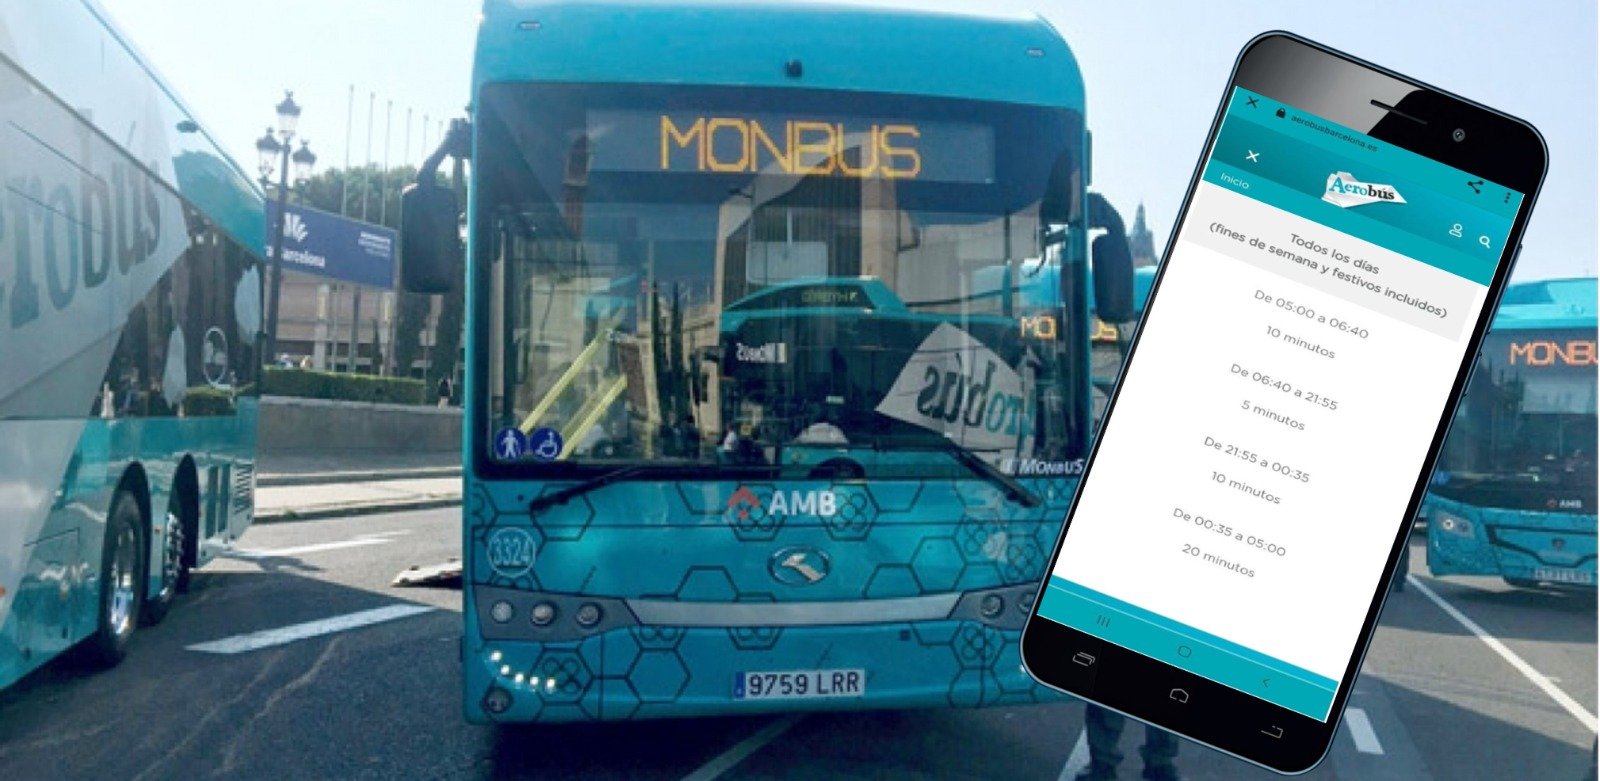 Monbus incumple con el compromiso de informar sobre el horario del Aerobús en tiempo real